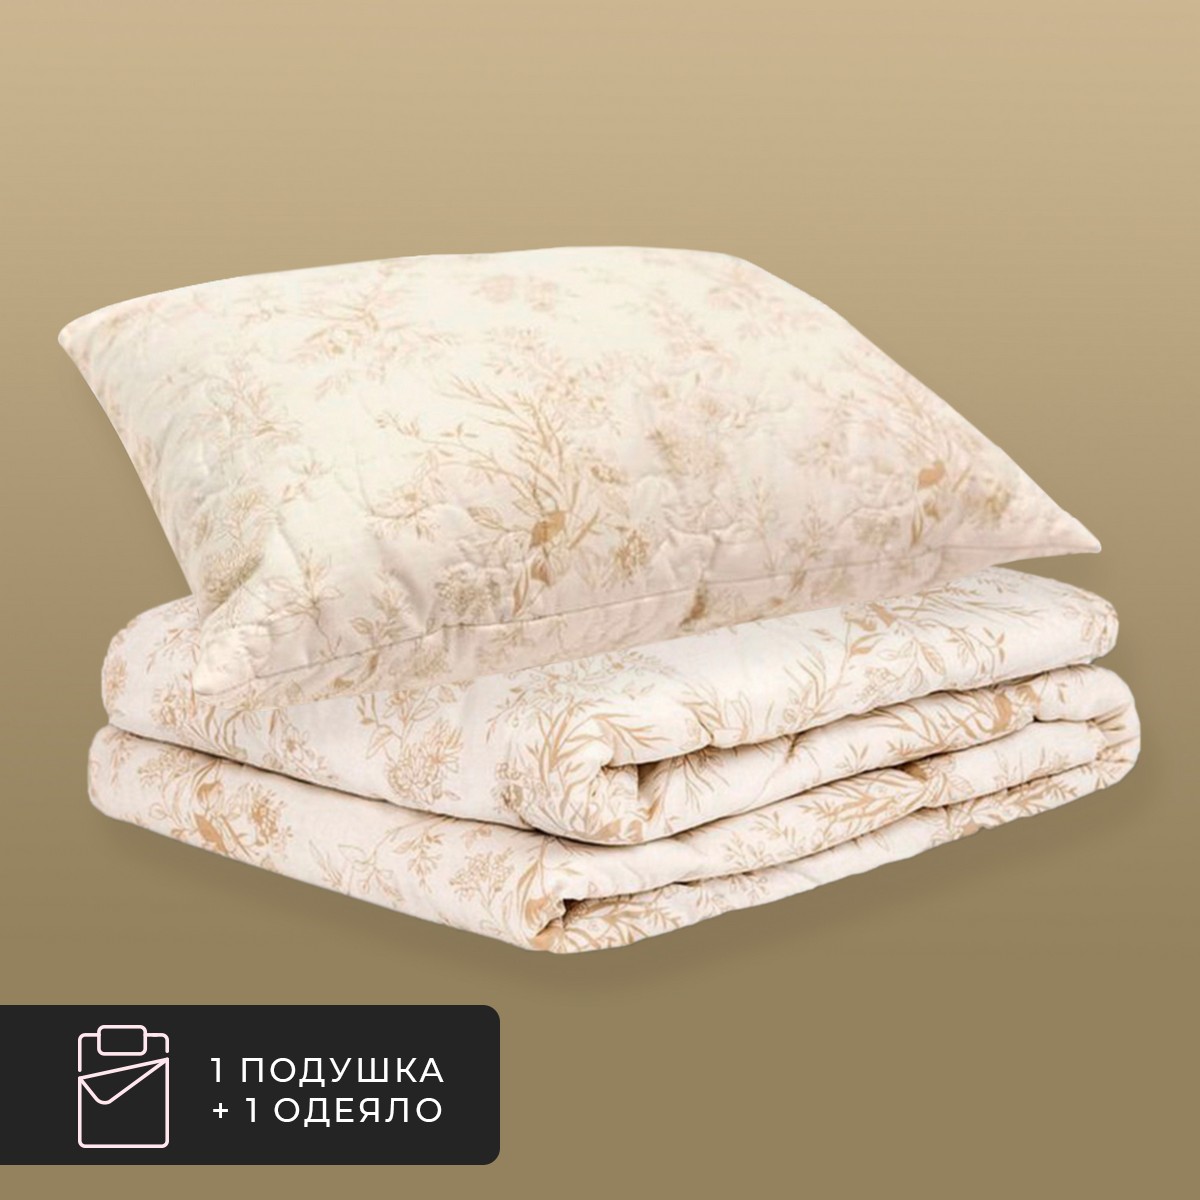 Набор 1 одеяло + 1 подушка Хлопок-натурэль, хлопковое волокно в хлопковом тике (175х200, 70х70)